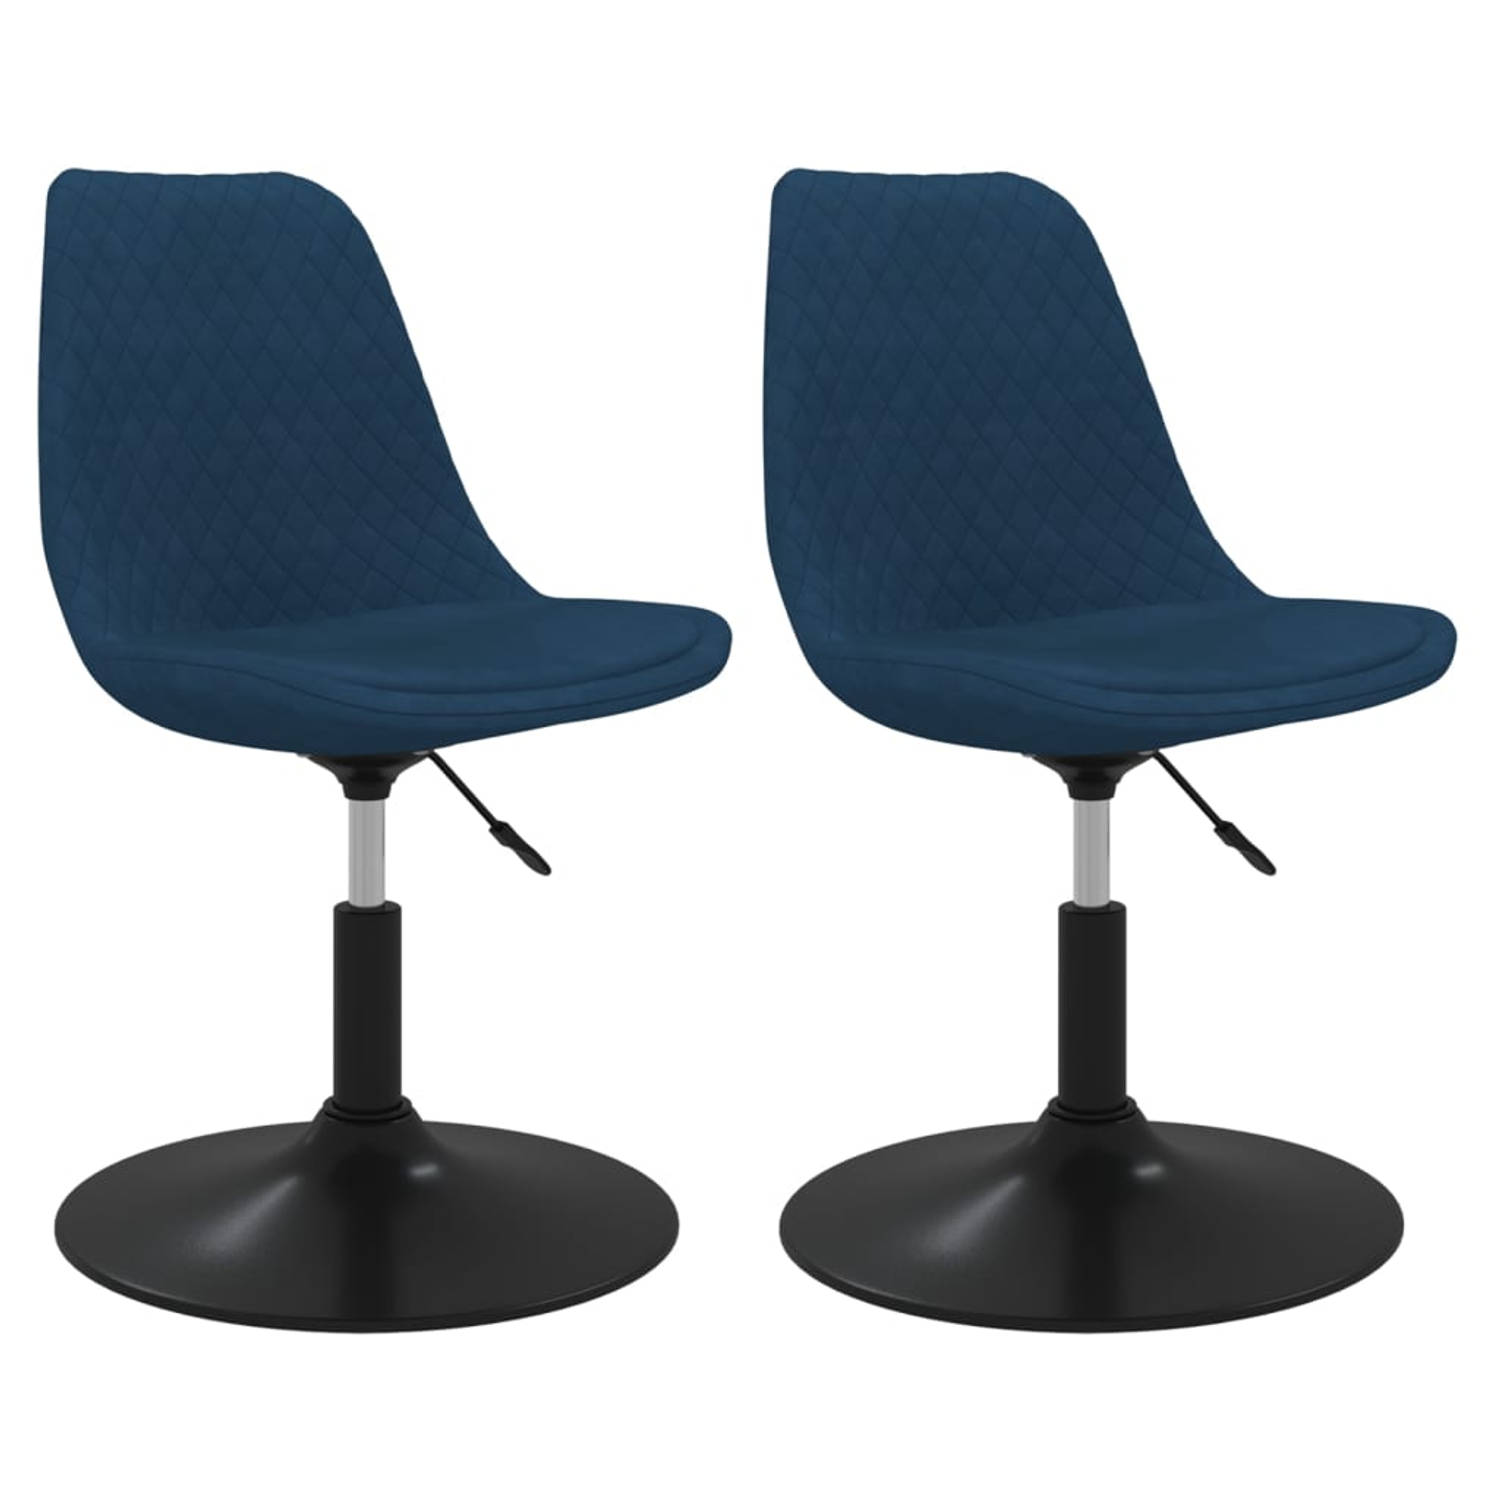 The Living Store Eetkamerstoel - Zacht fluwelen stoelen - Afmeting- 49 x 42 x (81-93) cm - Blauw